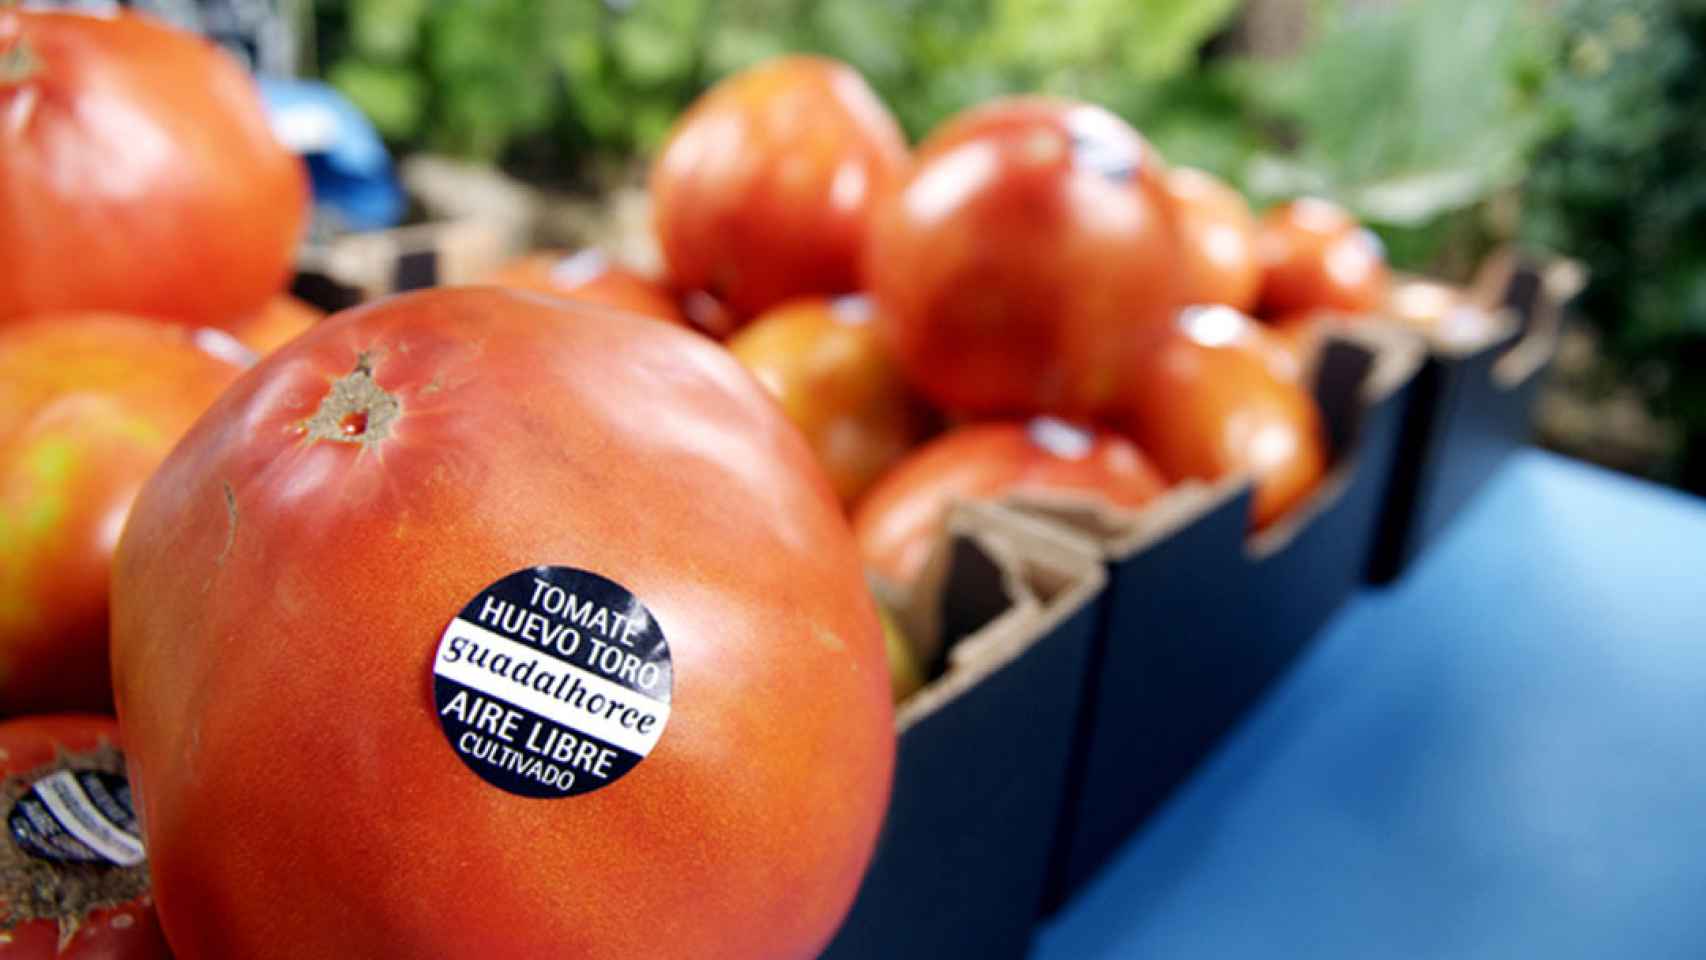 El tomate que vale 1.900 euros: es Huevo de Toro y se vende en Málaga.